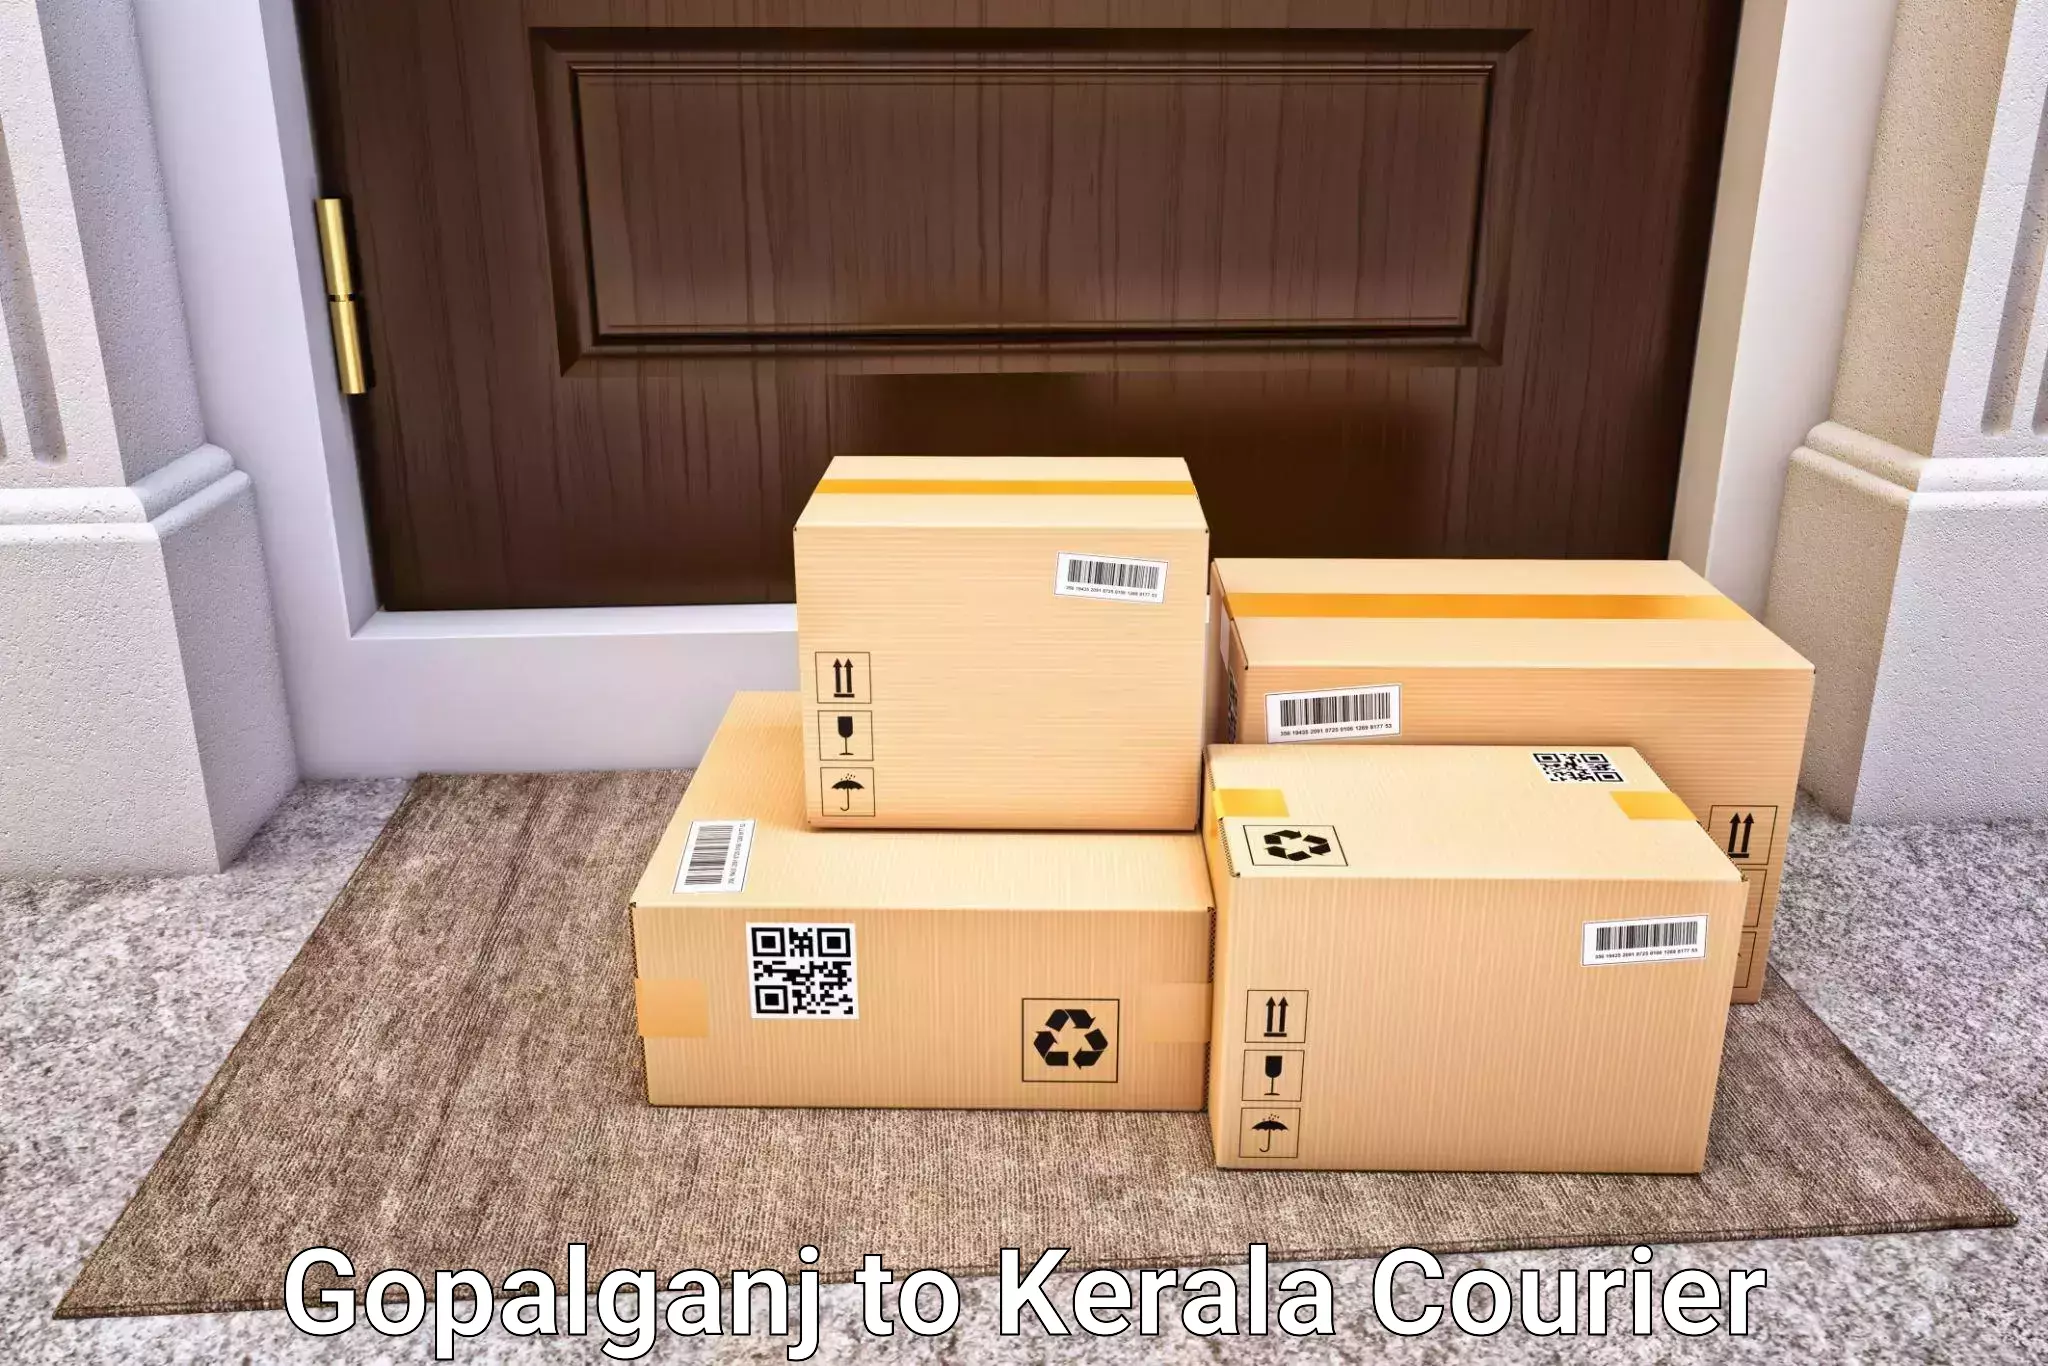 Luggage shipment tracking Gopalganj to Agali